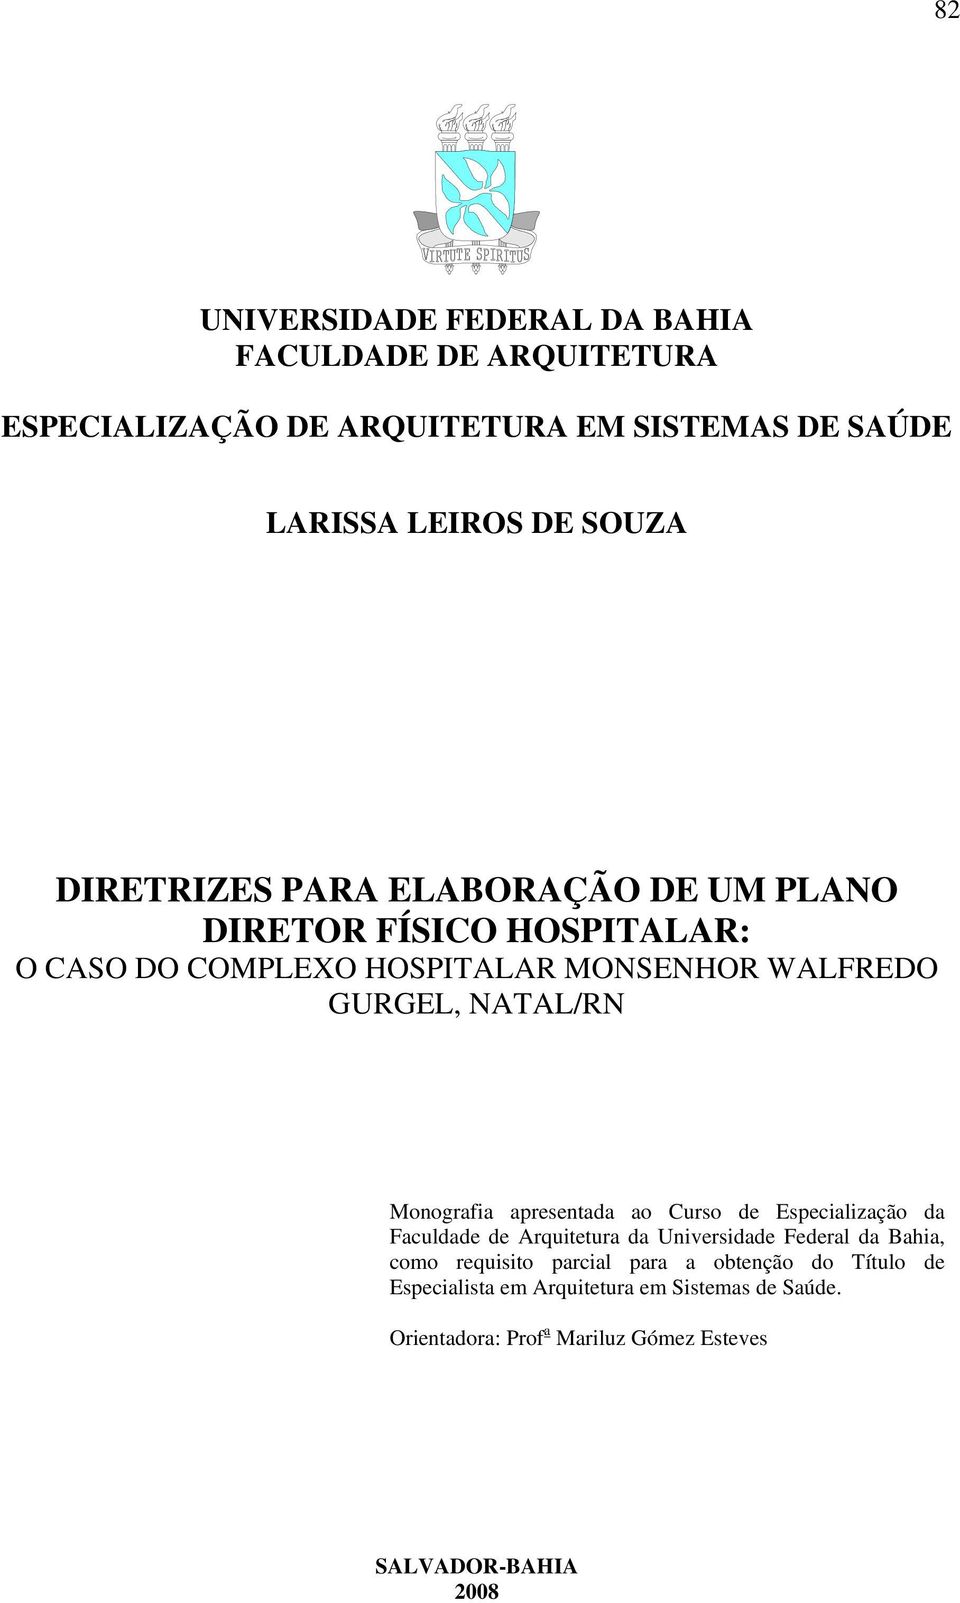 Monografia apresentada ao Curso de Especialização da Faculdade de Arquitetura da Universidade Federal da Bahia, como requisito parcial